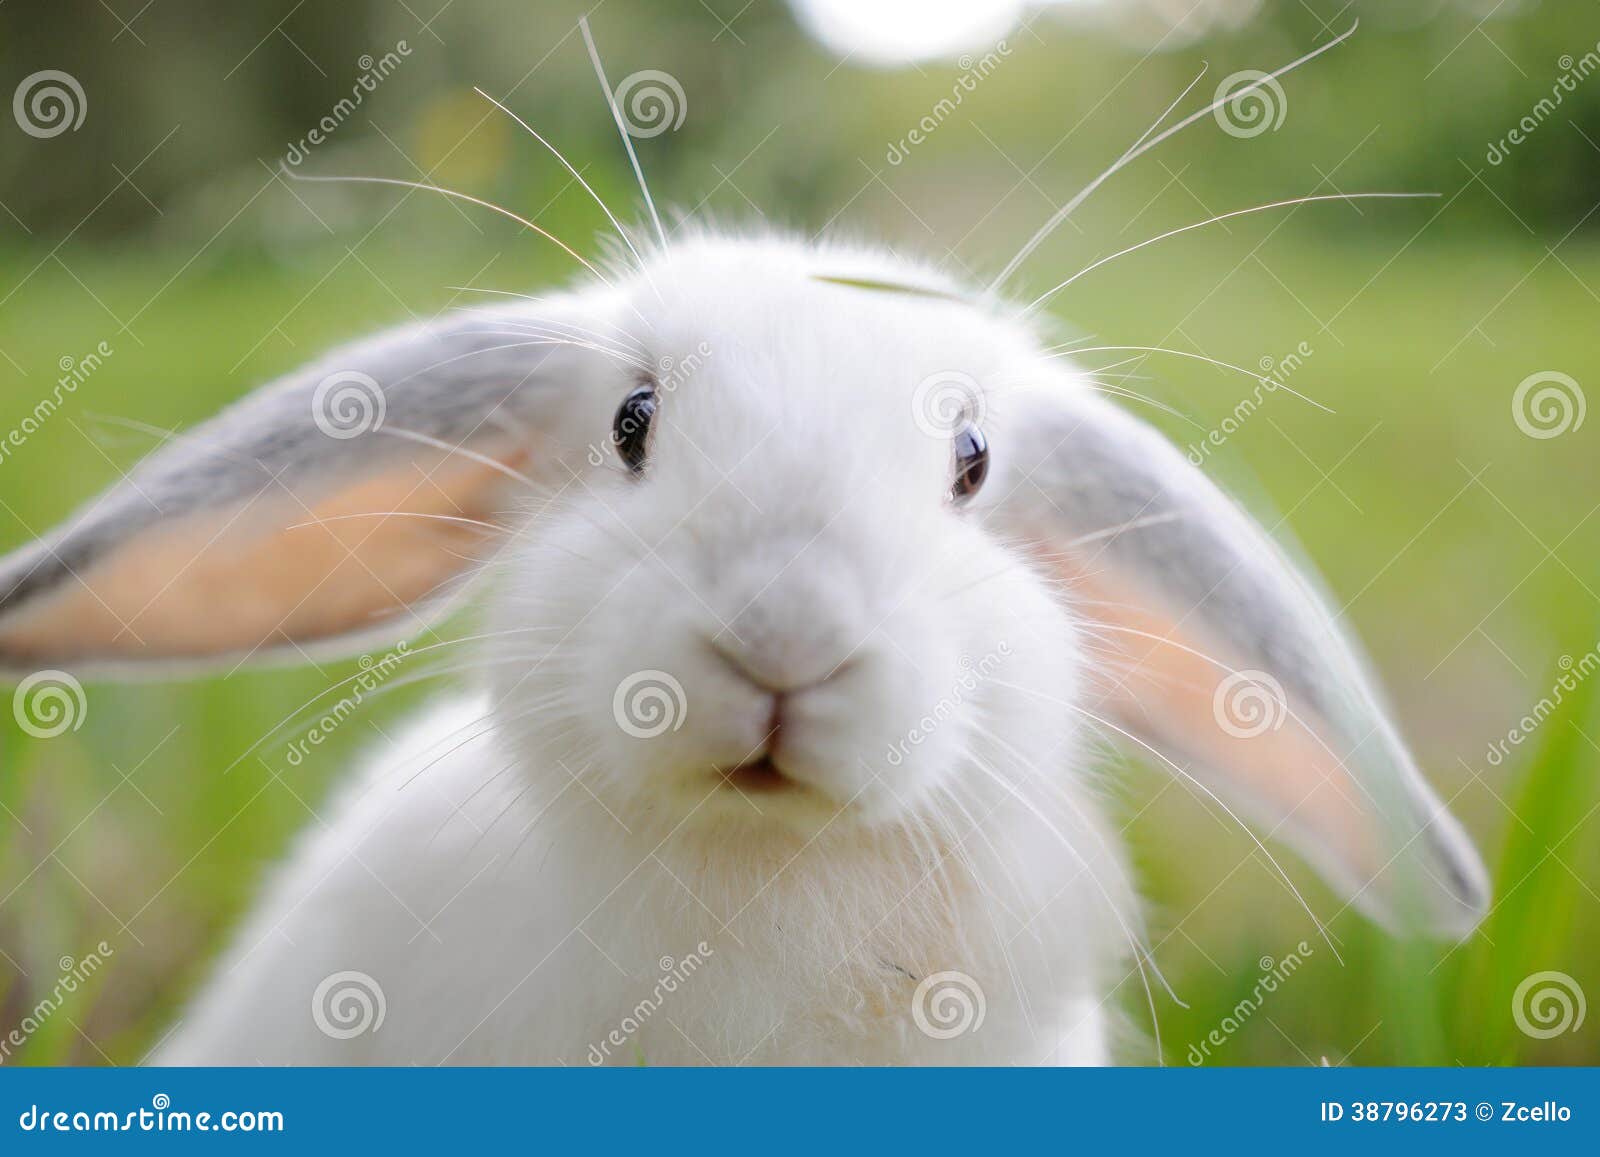 huwelijk Beschuldiging begrijpen Wit konijn stock afbeelding. Image of konijntje, kijkt - 38796273